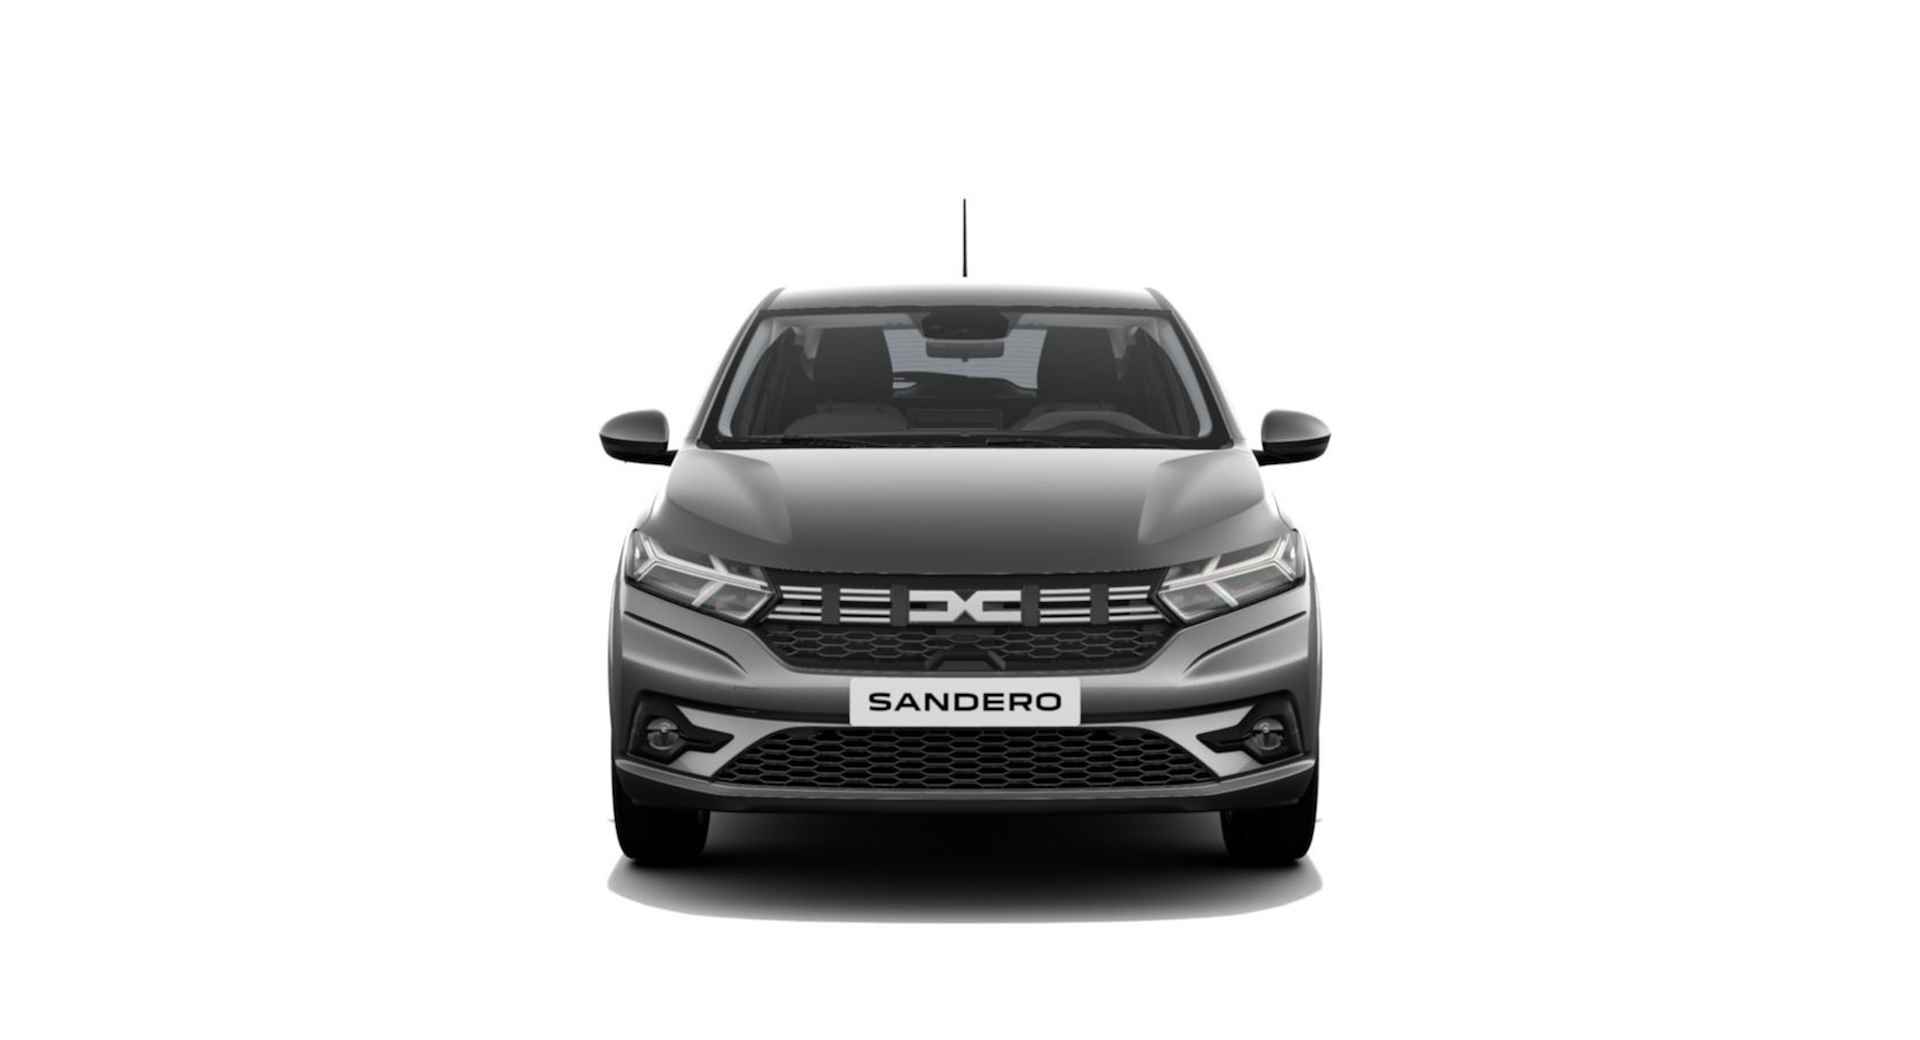 Dacia Sandero 1.0 TCe 100 ECO-G Expression | NU met standaard 5 jaar fabrieksgarantie bij Renault Zeeuw & Zeeuw Delft! | - 8/13